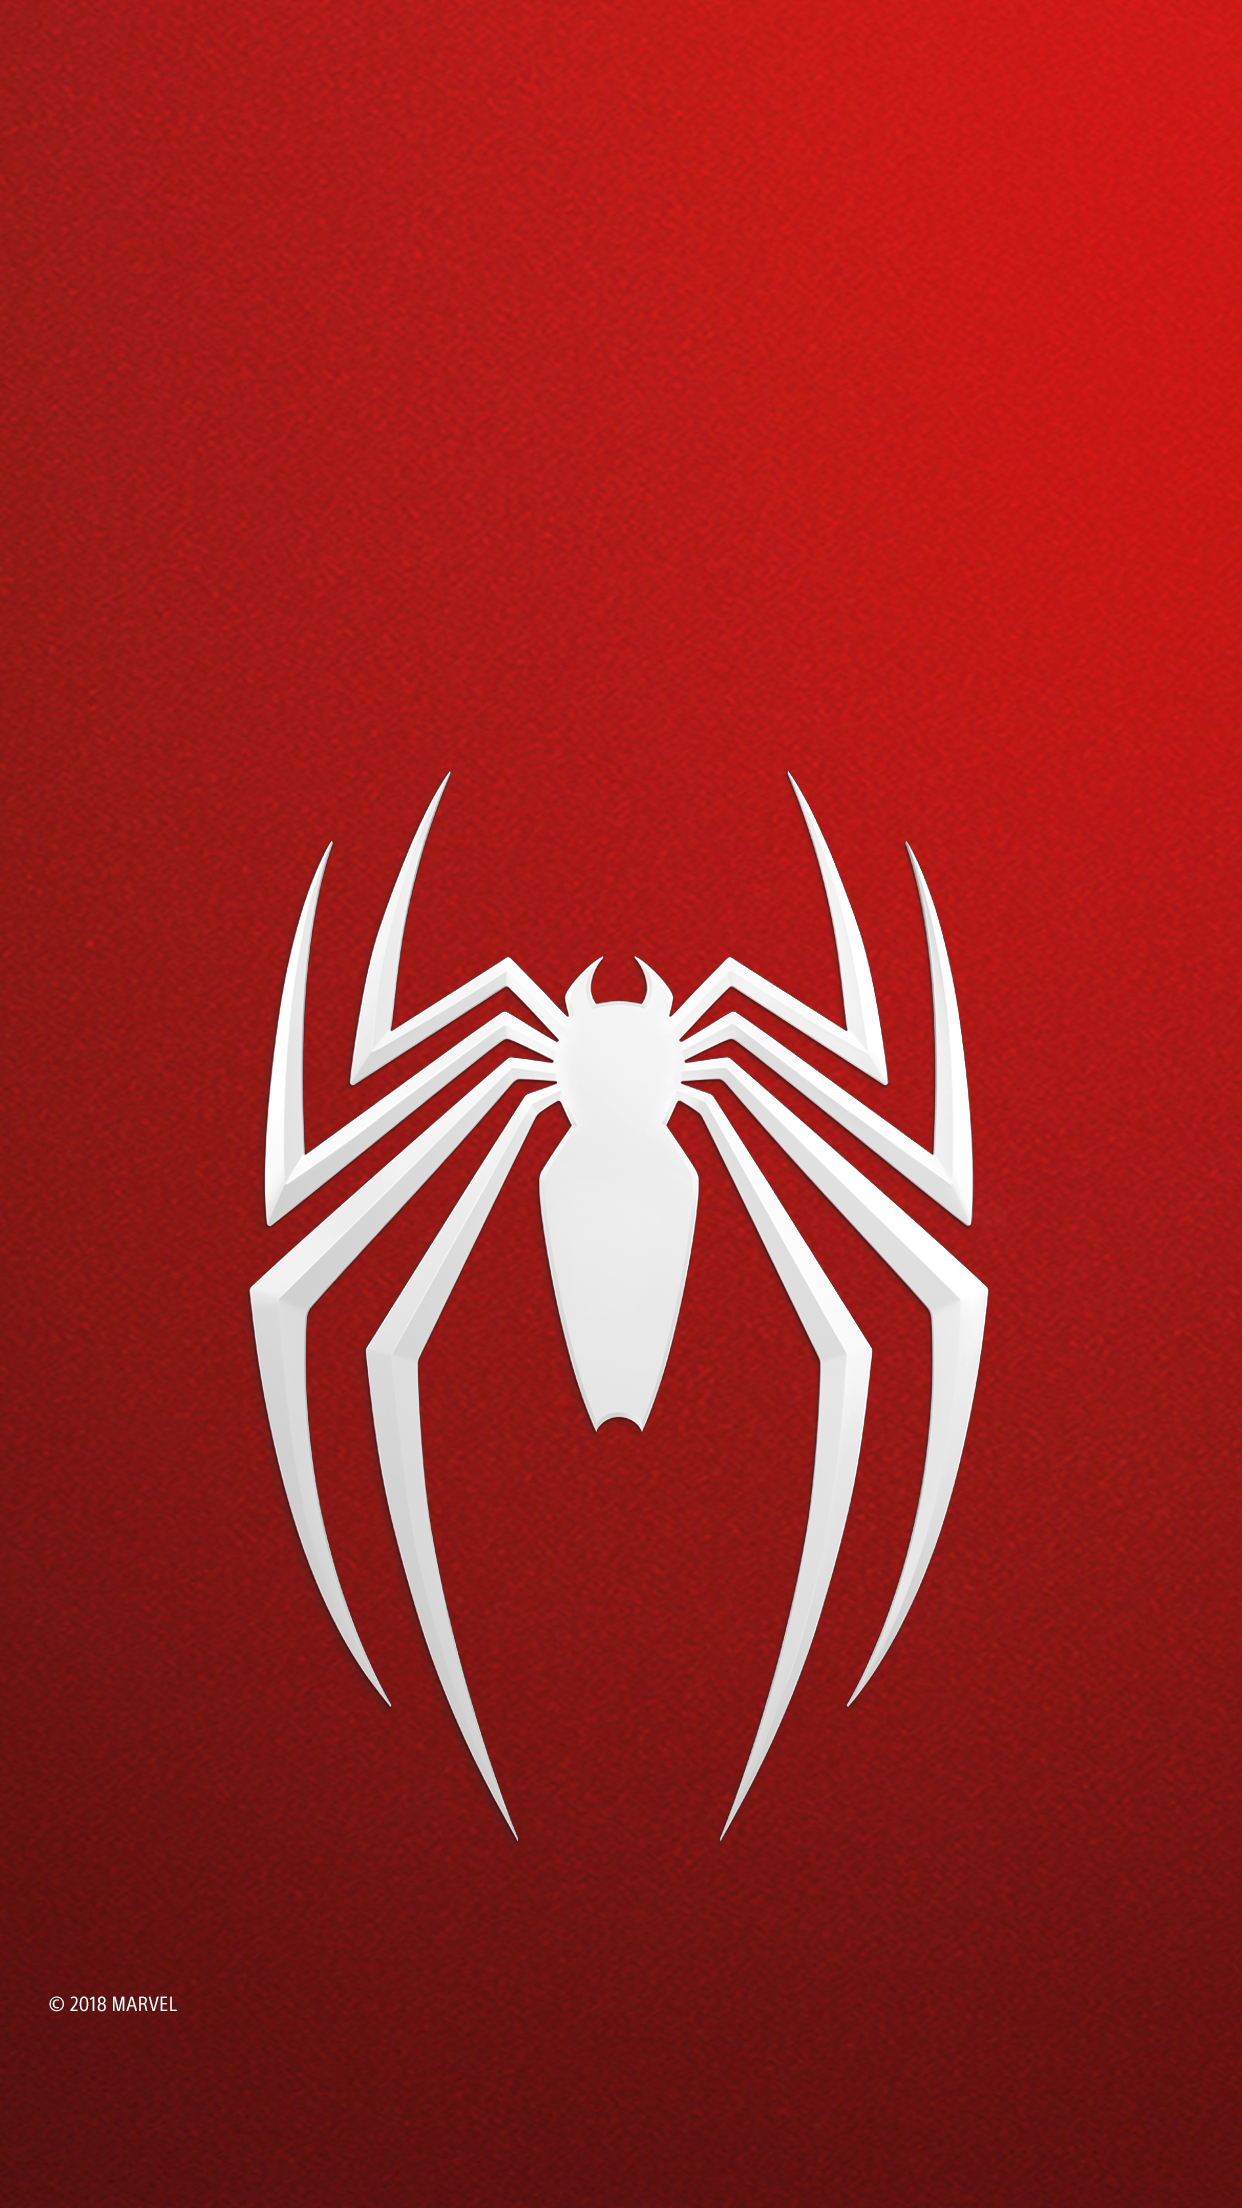 marvel’s spider-man – mobilbakgrund